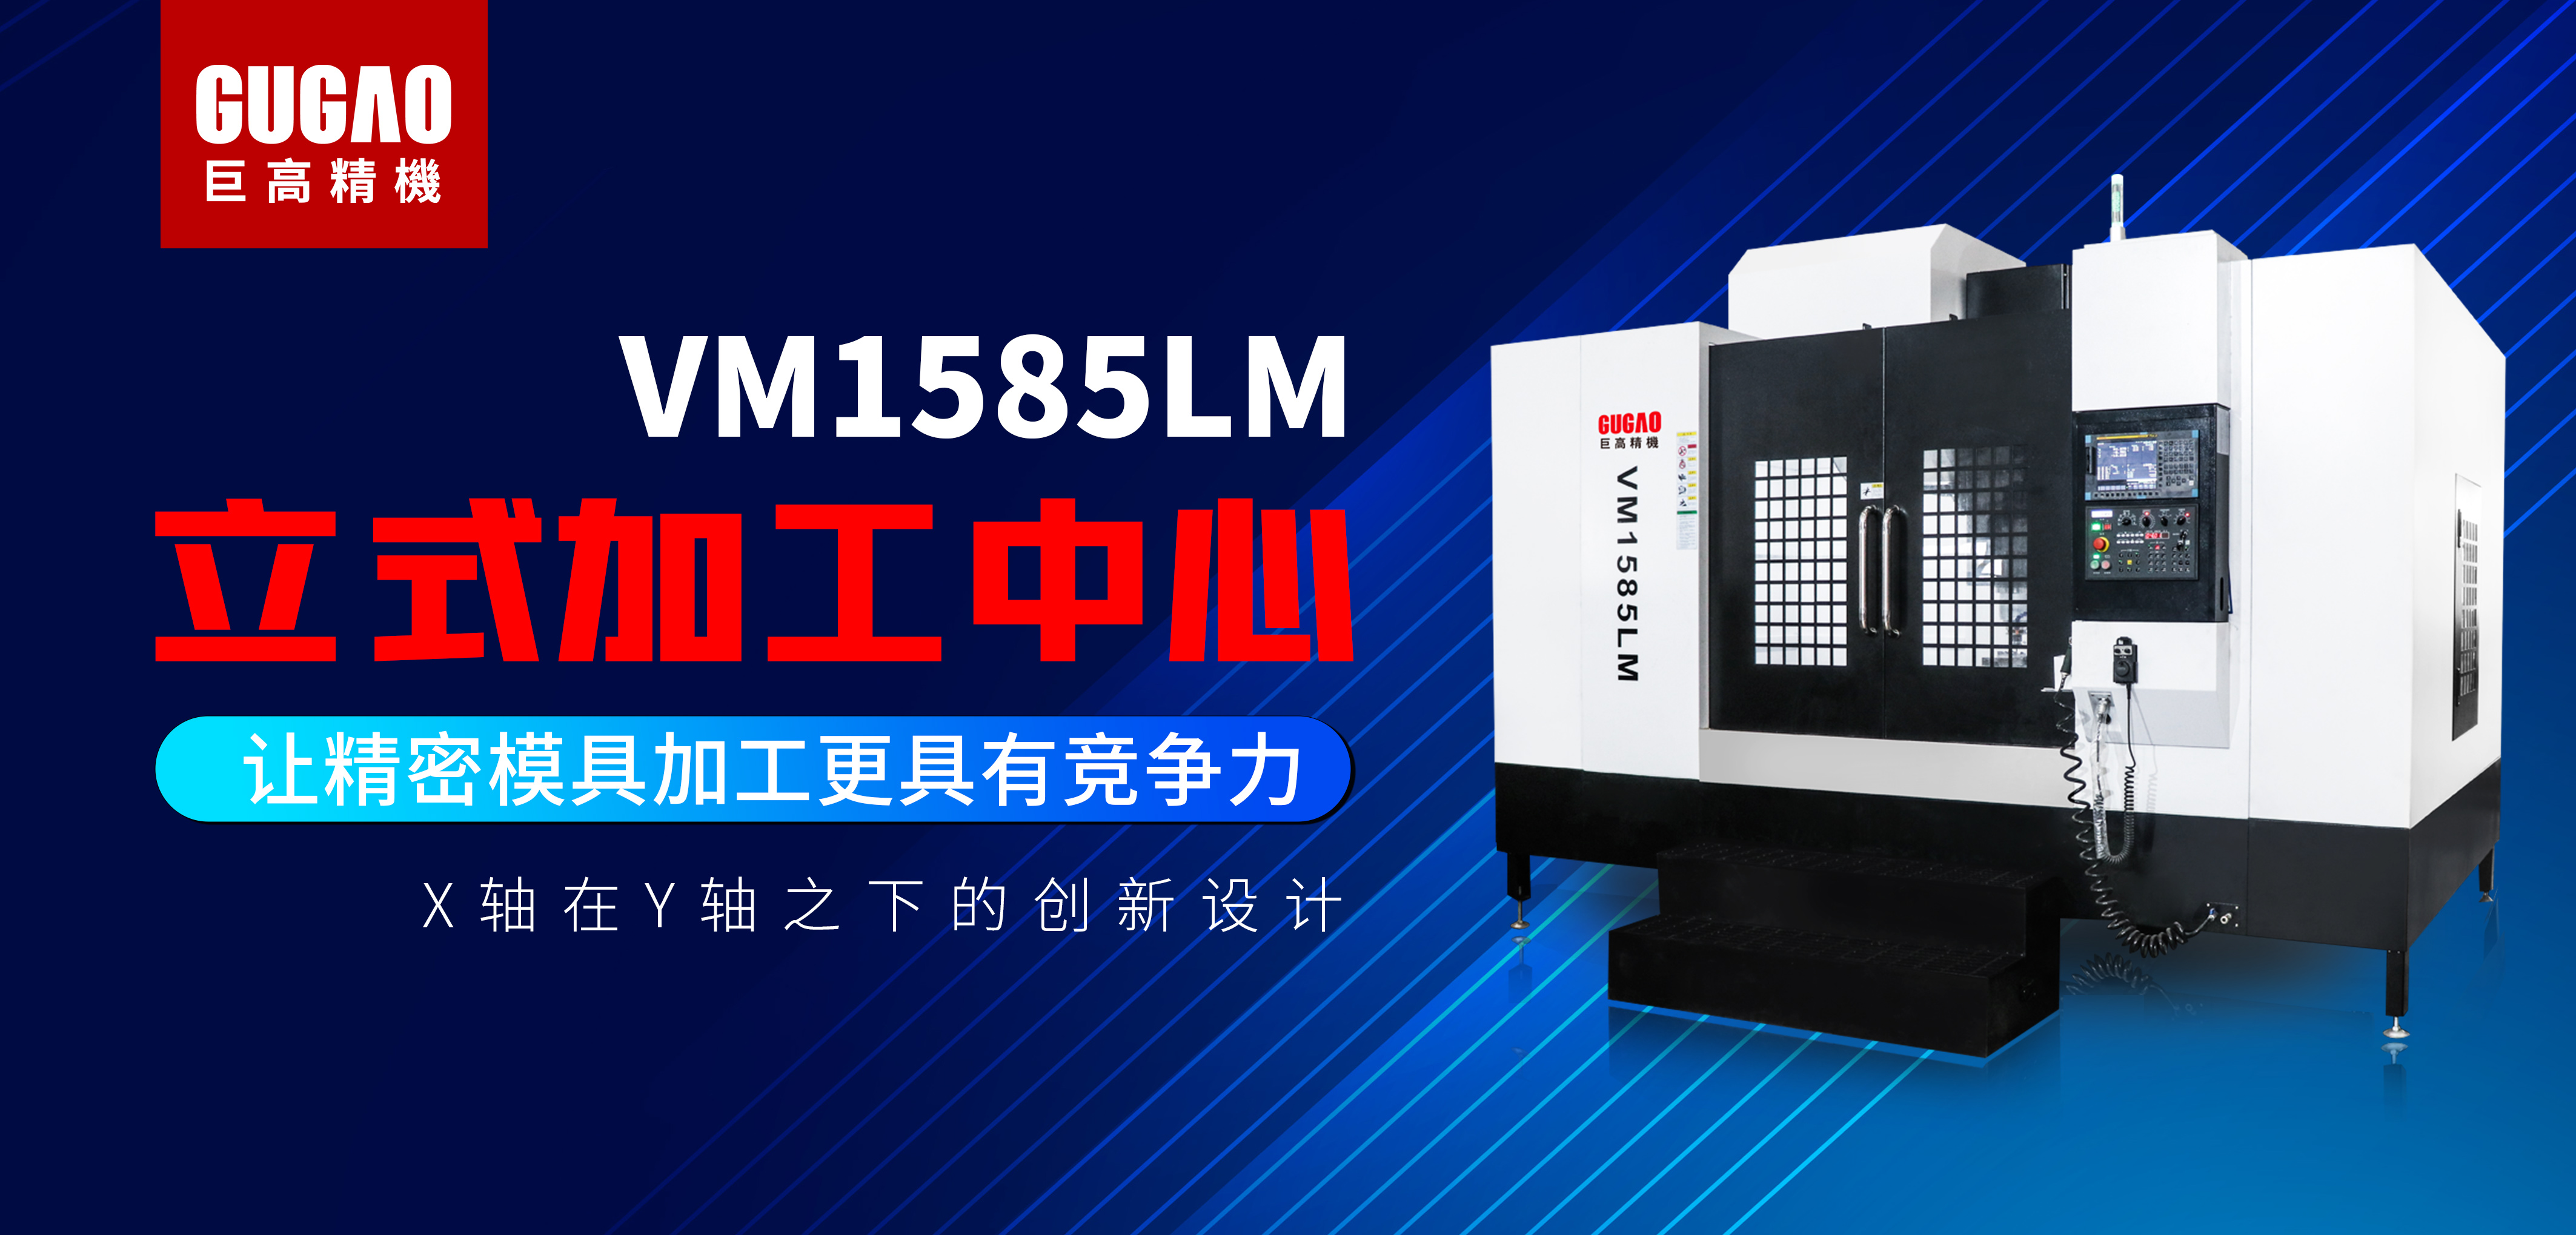 中小型模具加工首选——巨高精机高承载VM1585LM立加